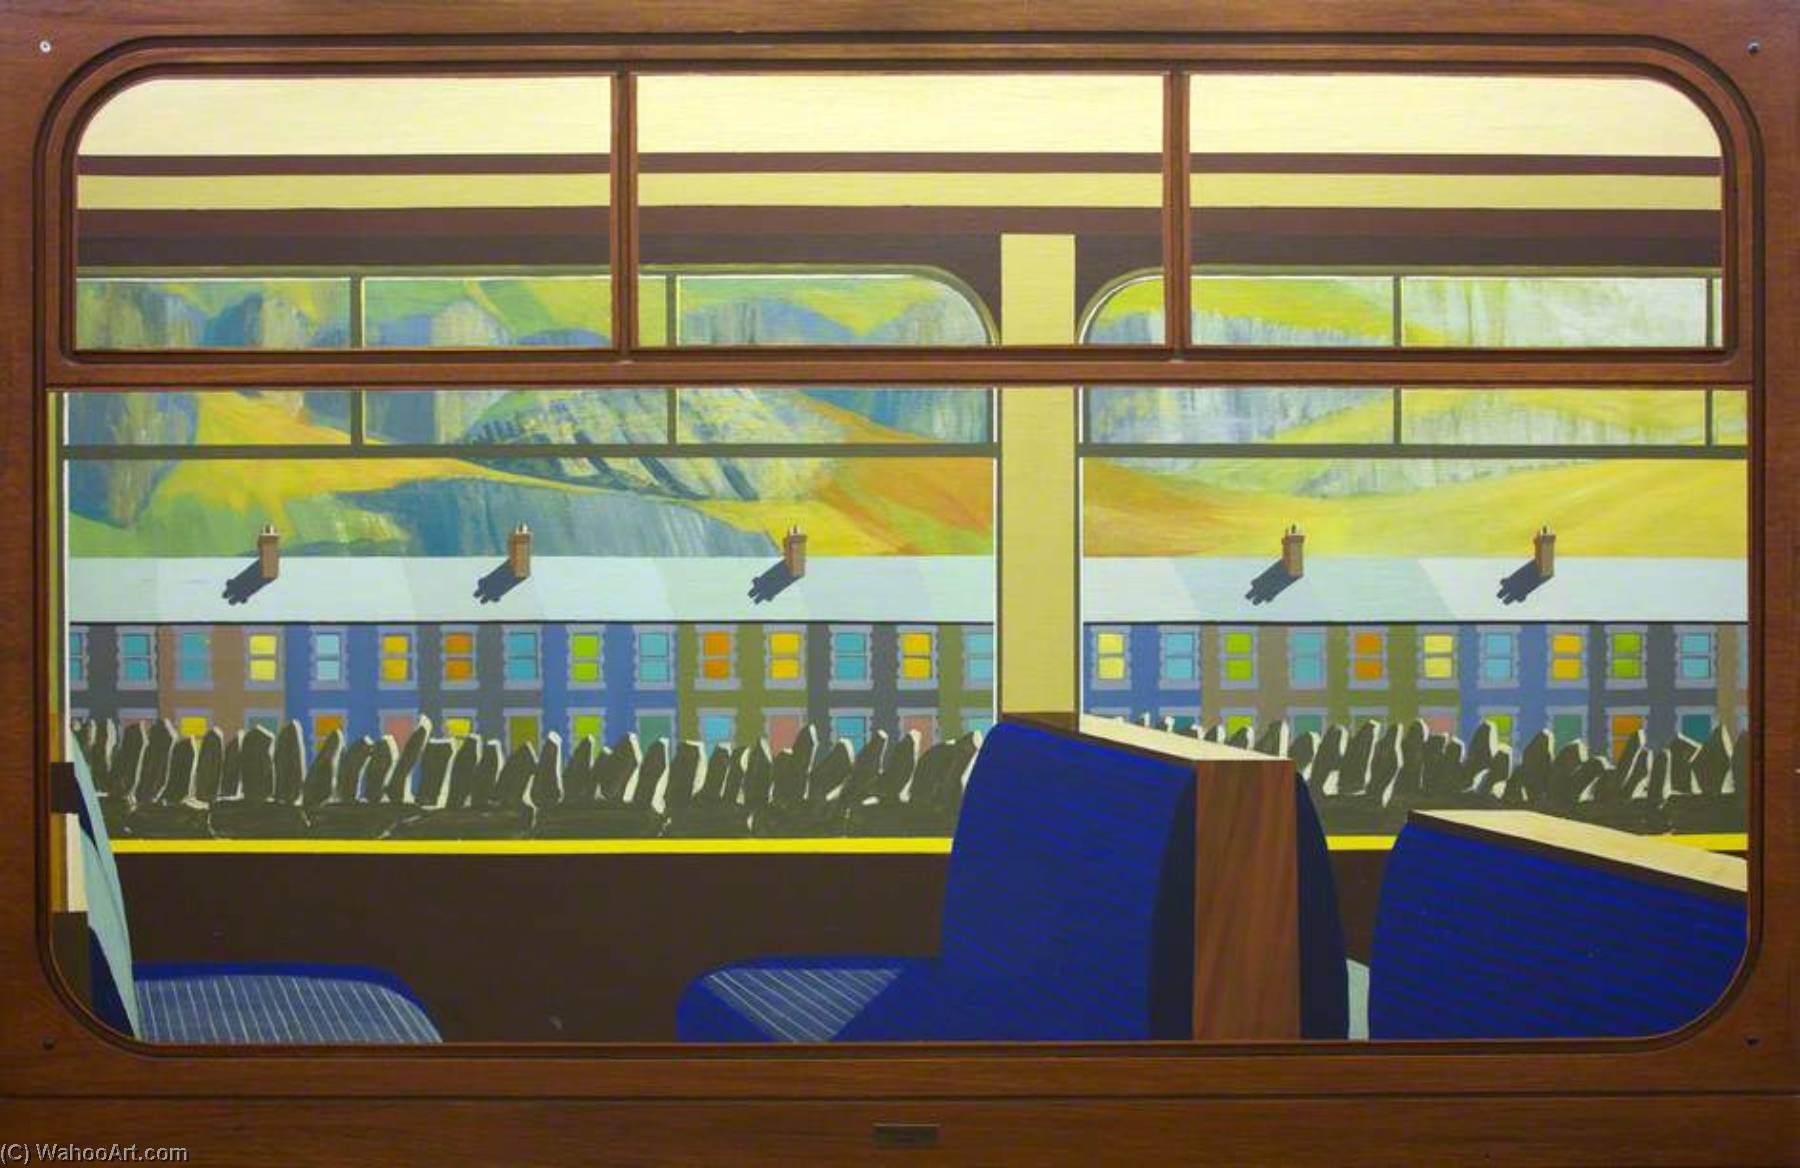 WikiOO.org - אנציקלופדיה לאמנויות יפות - ציור, יצירות אמנות Anna Todd - View from a Railway Carriage Blaenau Ffestiniog Station